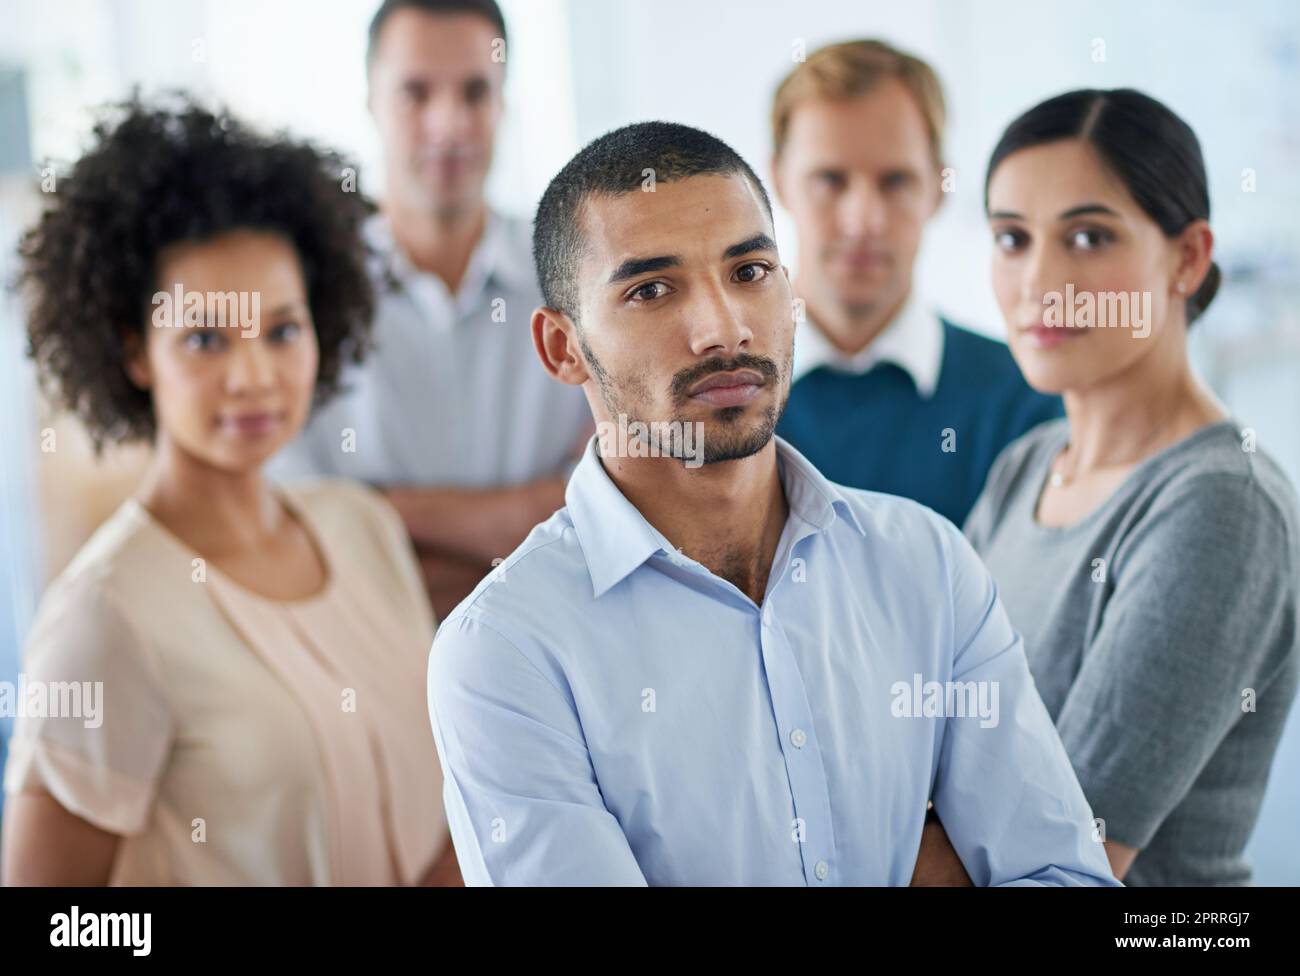 Erfolg ist die einzige Option. Porträt einer Gruppe verschiedener Kollegen, die in einem Büro stehen. Stockfoto